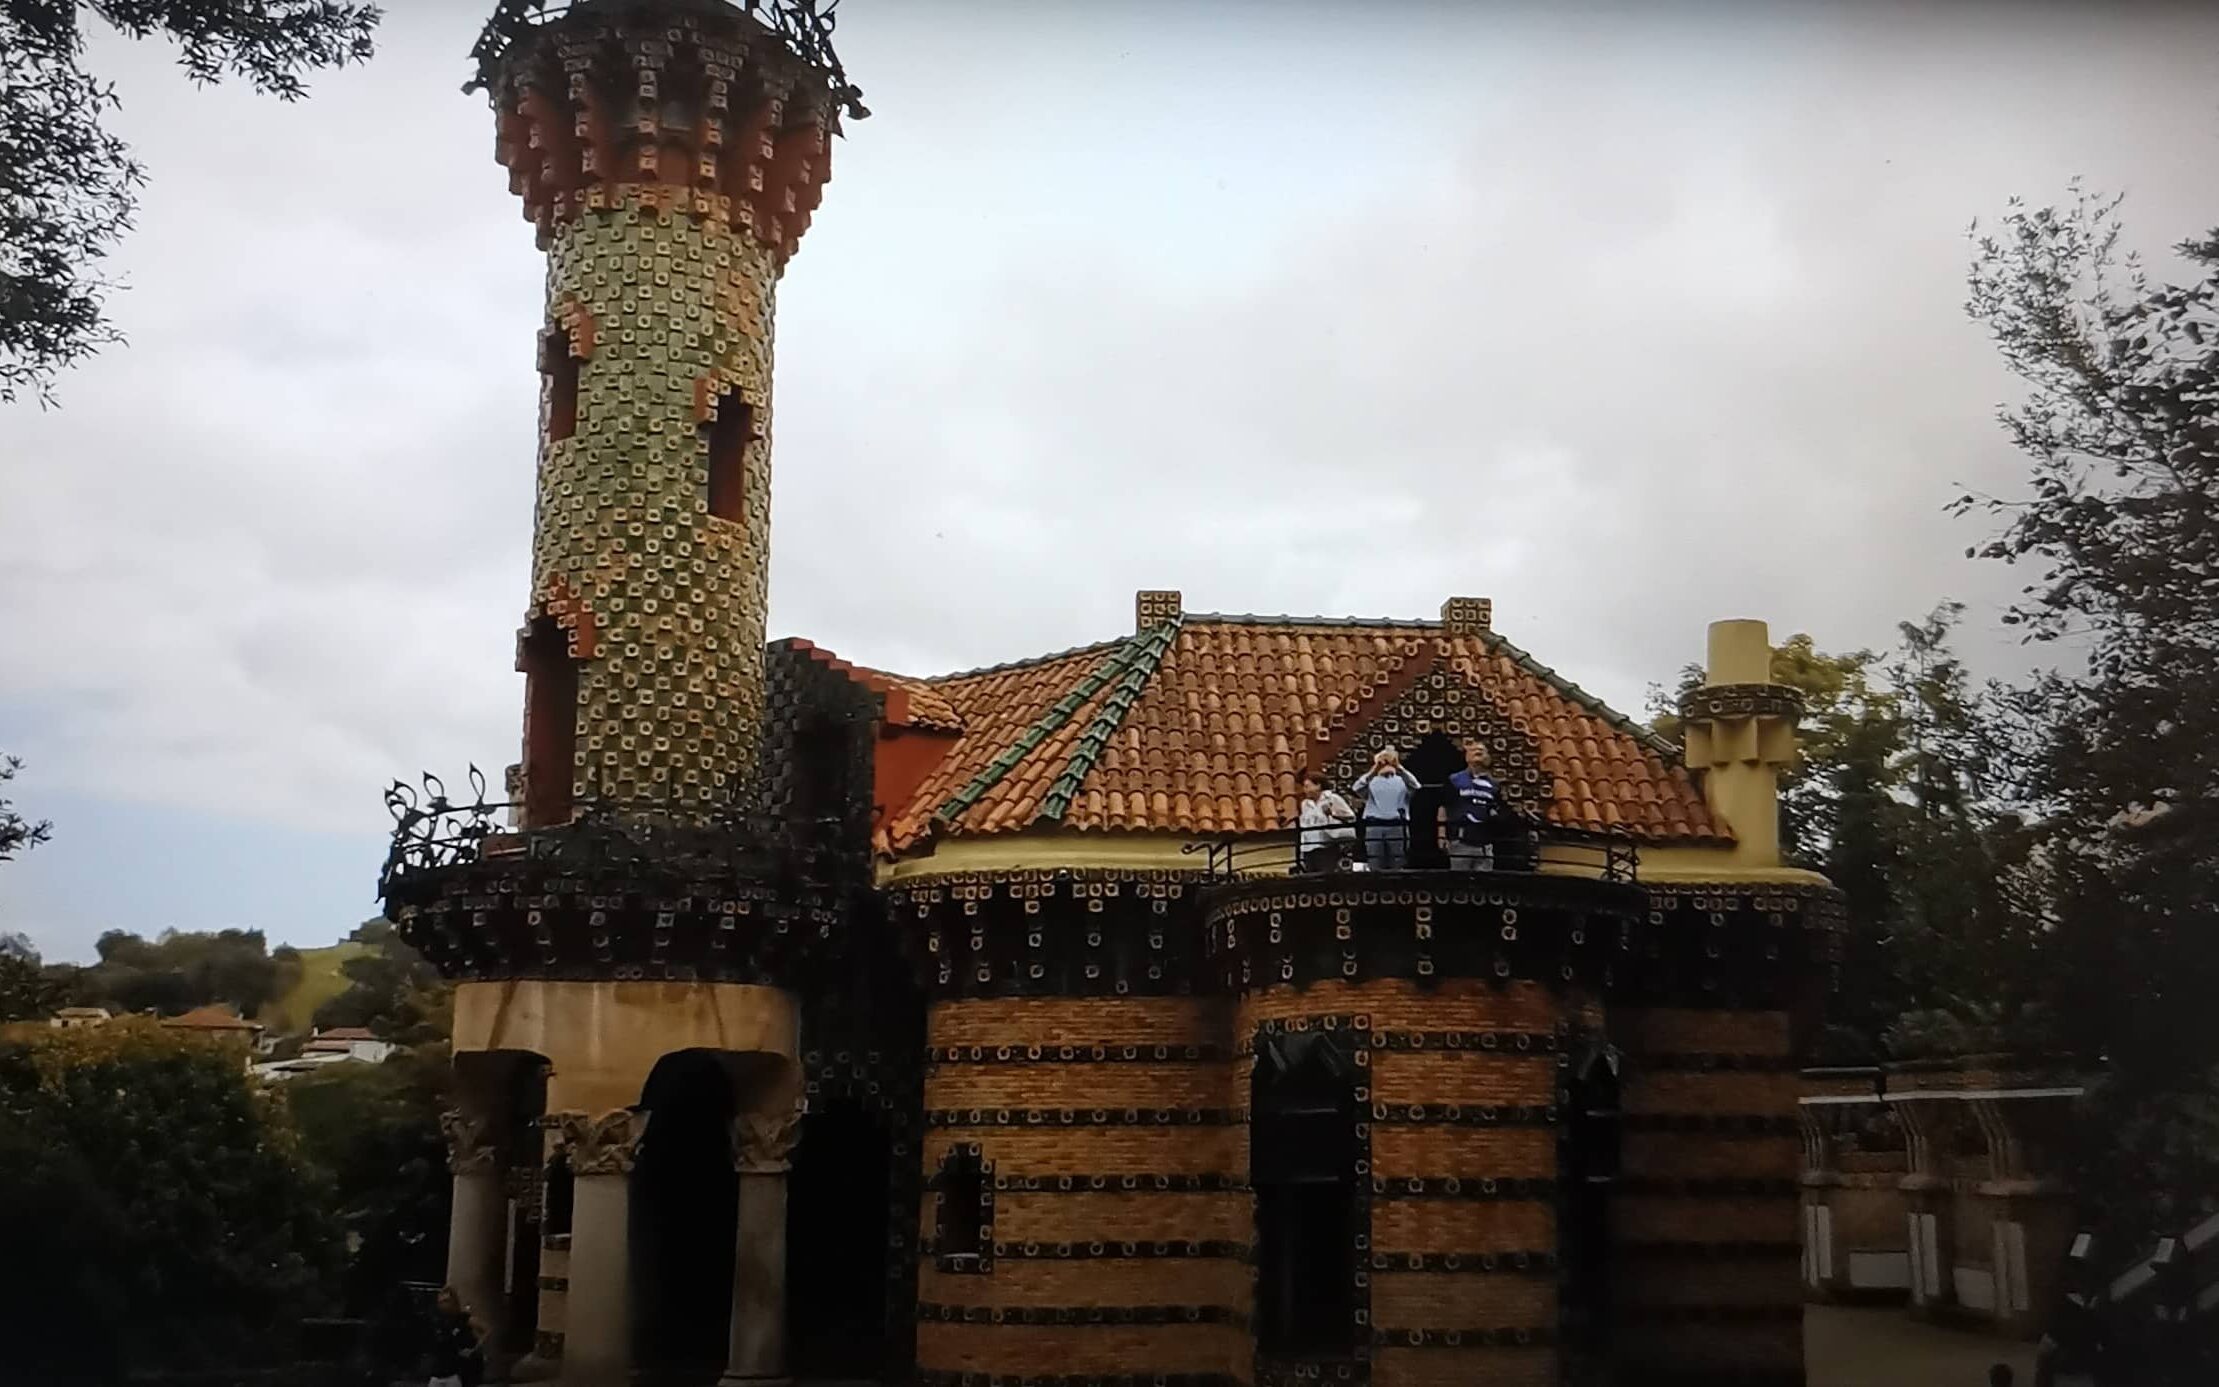 Capricho de Gaudí comillas